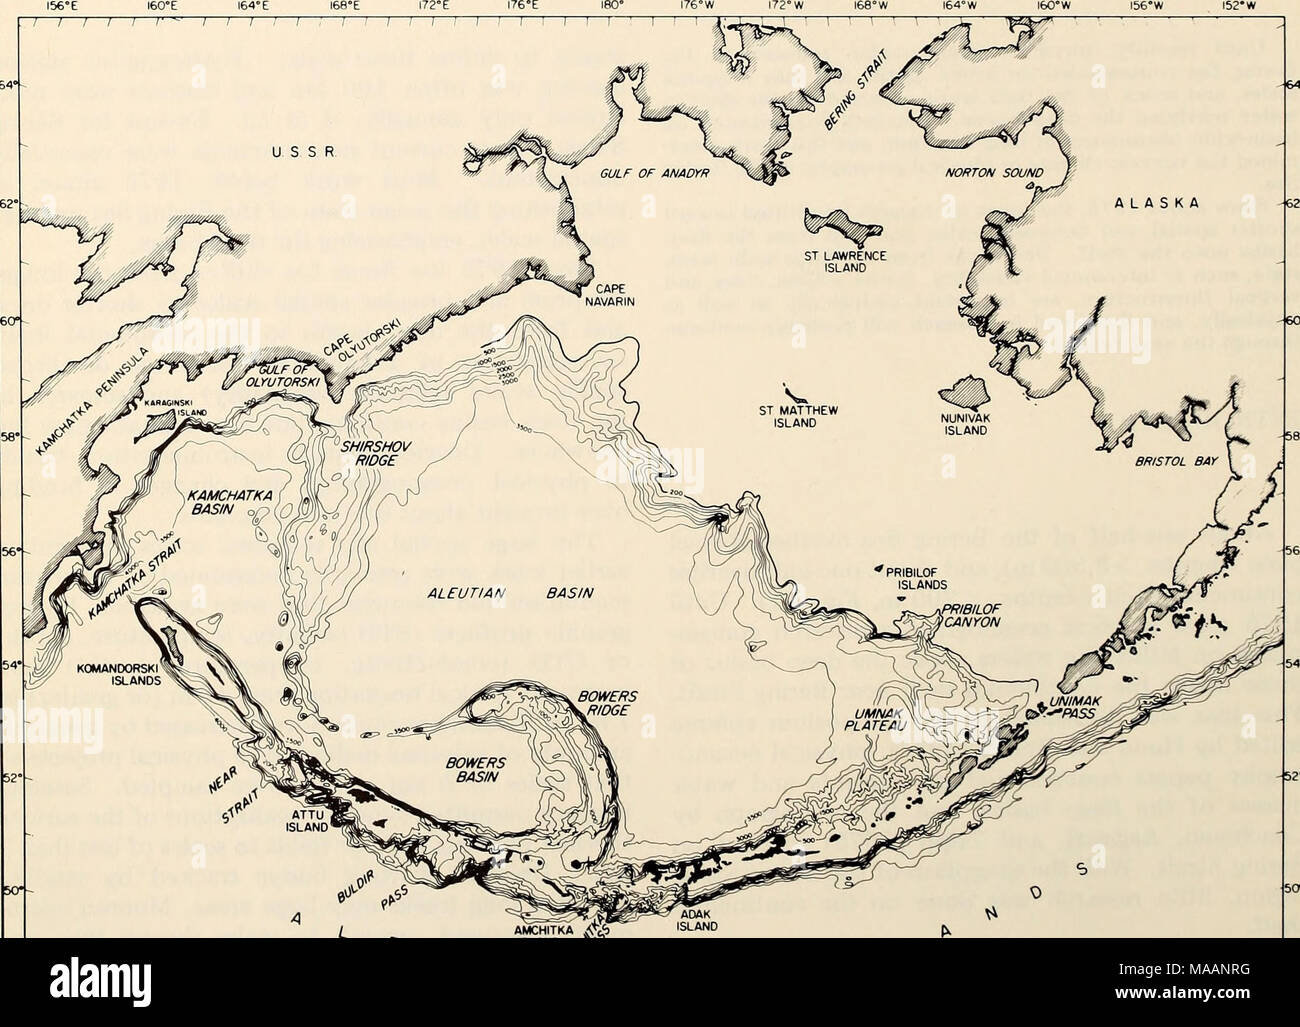 . L'Est de la mer de Béring Tablette : océanographie et ressources / edited by Donald W. Hood et John A. Calder . ALASKA J t J I J I L  AMCHITKA 4&lt;fe) jif ÎLE^V ? I I I I I I 1 , I 1 1 1 1 L. Figure 1-1. La mer de Béring : Environ la moitié de la mer de Béring est plaines abyssales à des profondeurs supérieures à 3 500 m et à environ un demi-plateau continental à des profondeurs de moins de 200 m. Les travaux récents ont porté sur le plateau au nord de l'île Saint-Laurent et à l'Est de l'île Nunivak/îles Pribilof. Ce chiffre a été préparé par Noel McGary pour l'atlas par Sayles, et al. (1979). Banque D'Images